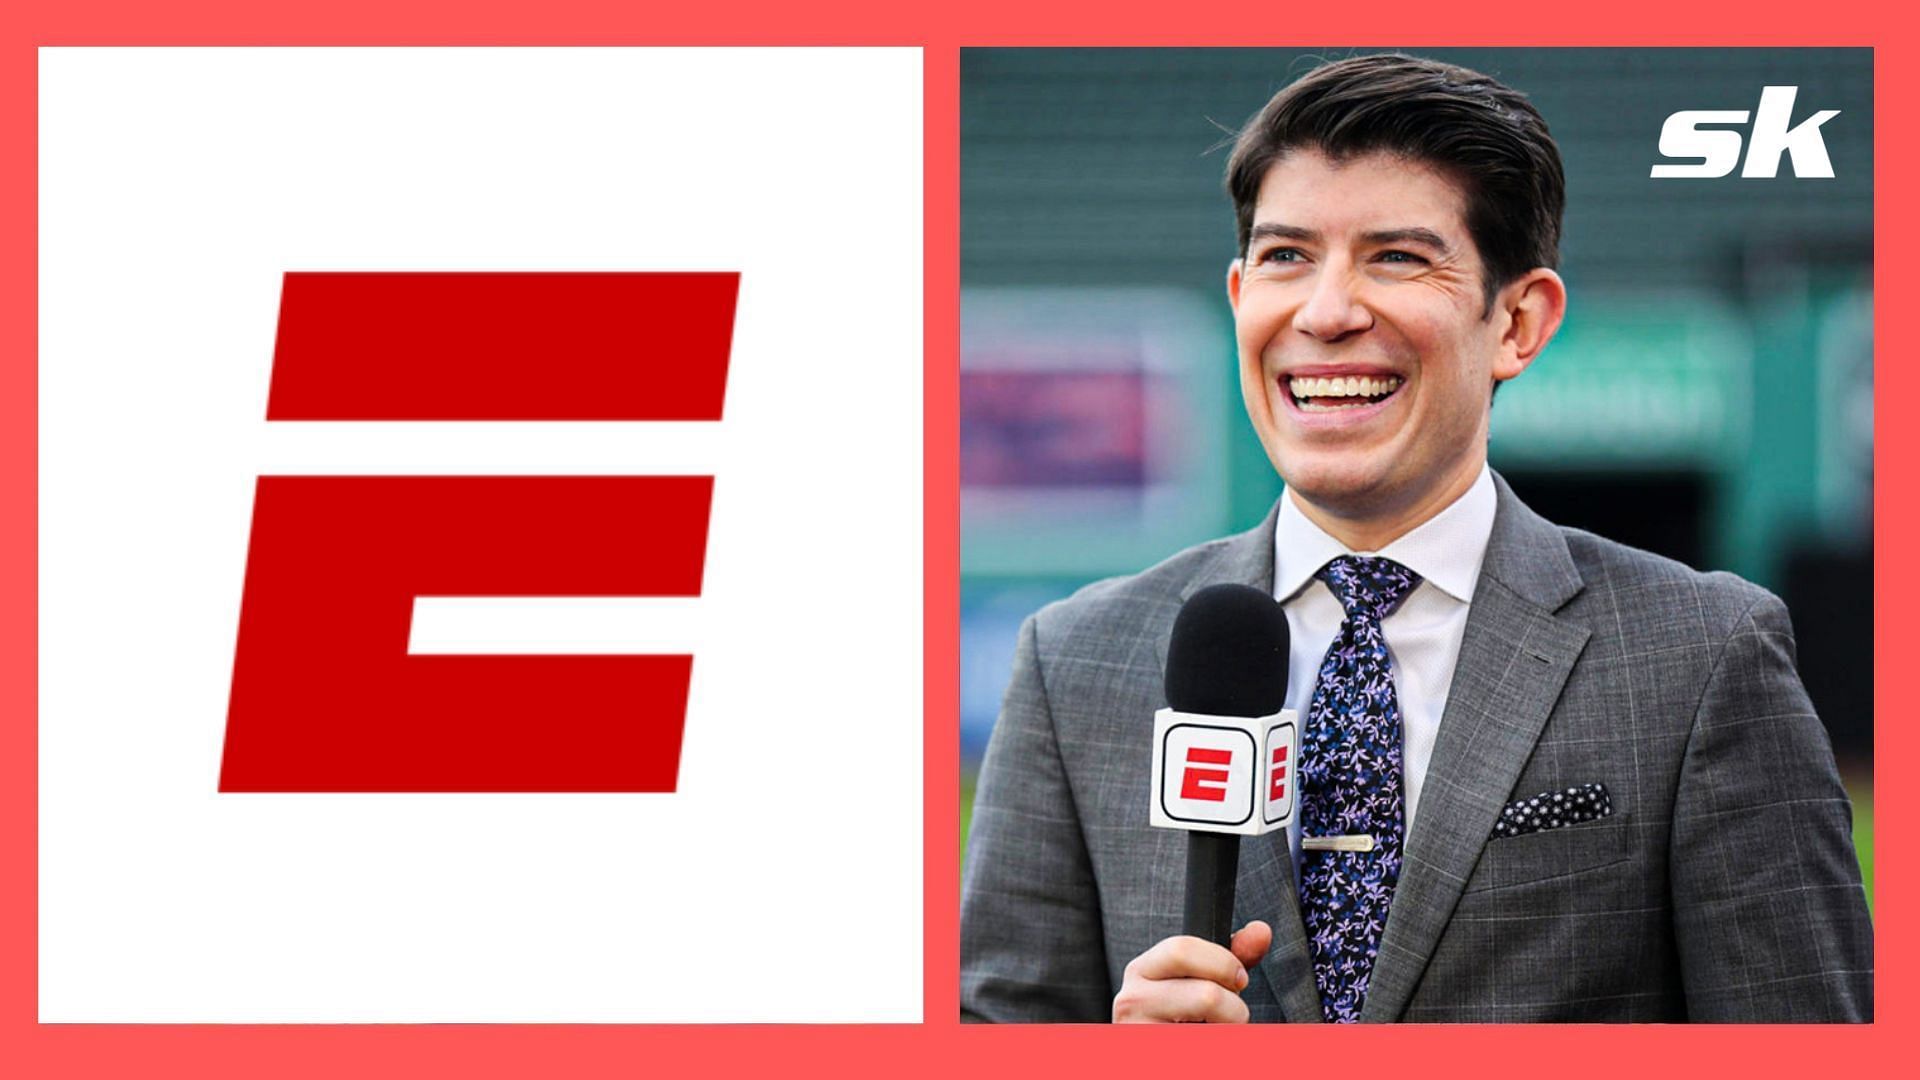 Franchise Icons - ESPN